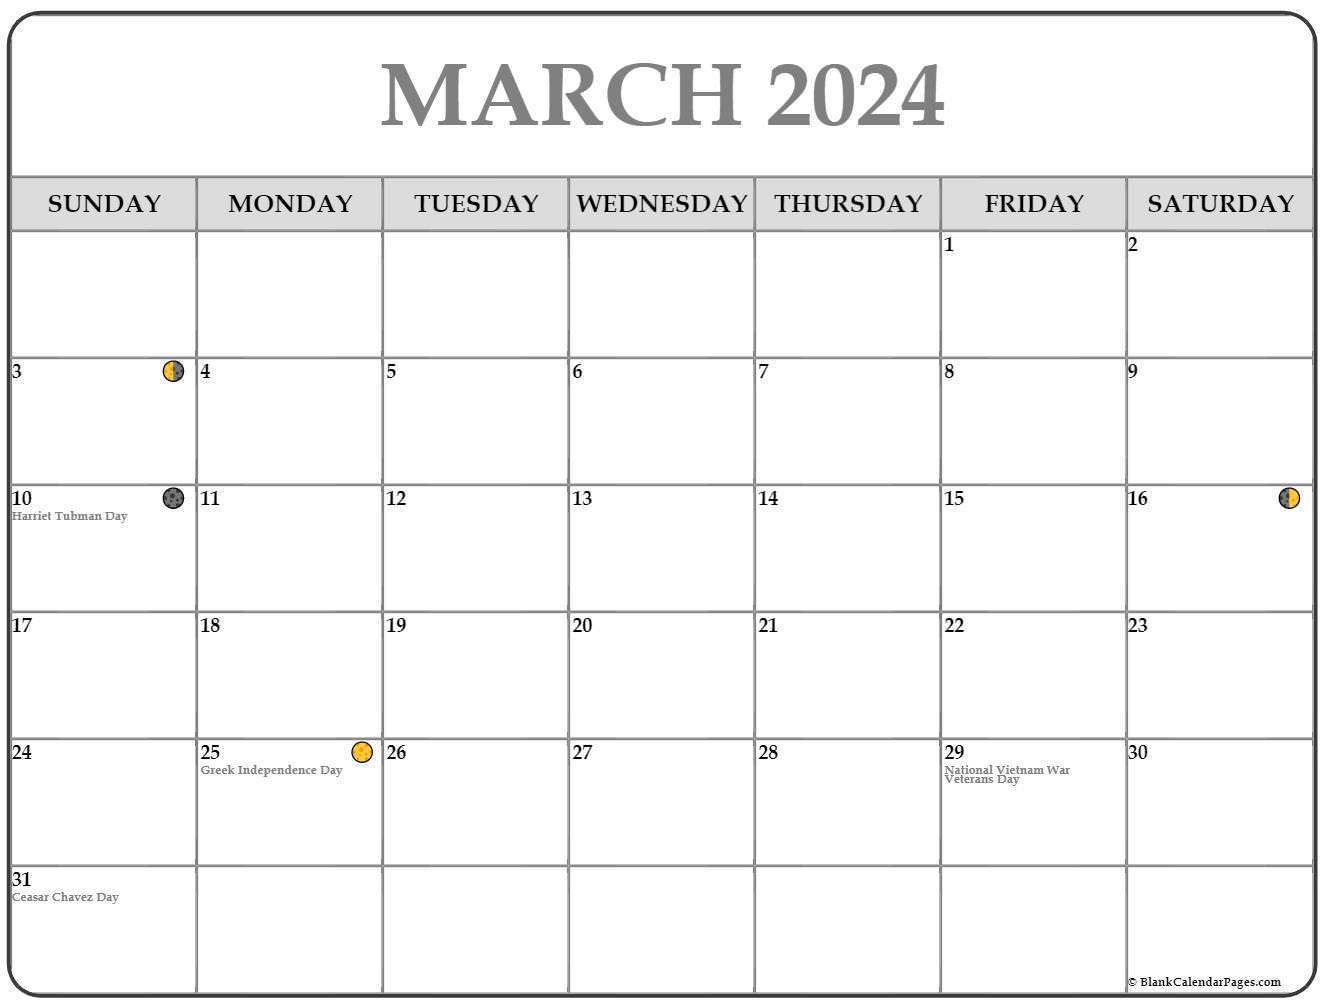 Lunar Calendar June 2022 March 2022 Lunar Calendar | Moon Phase Calendar